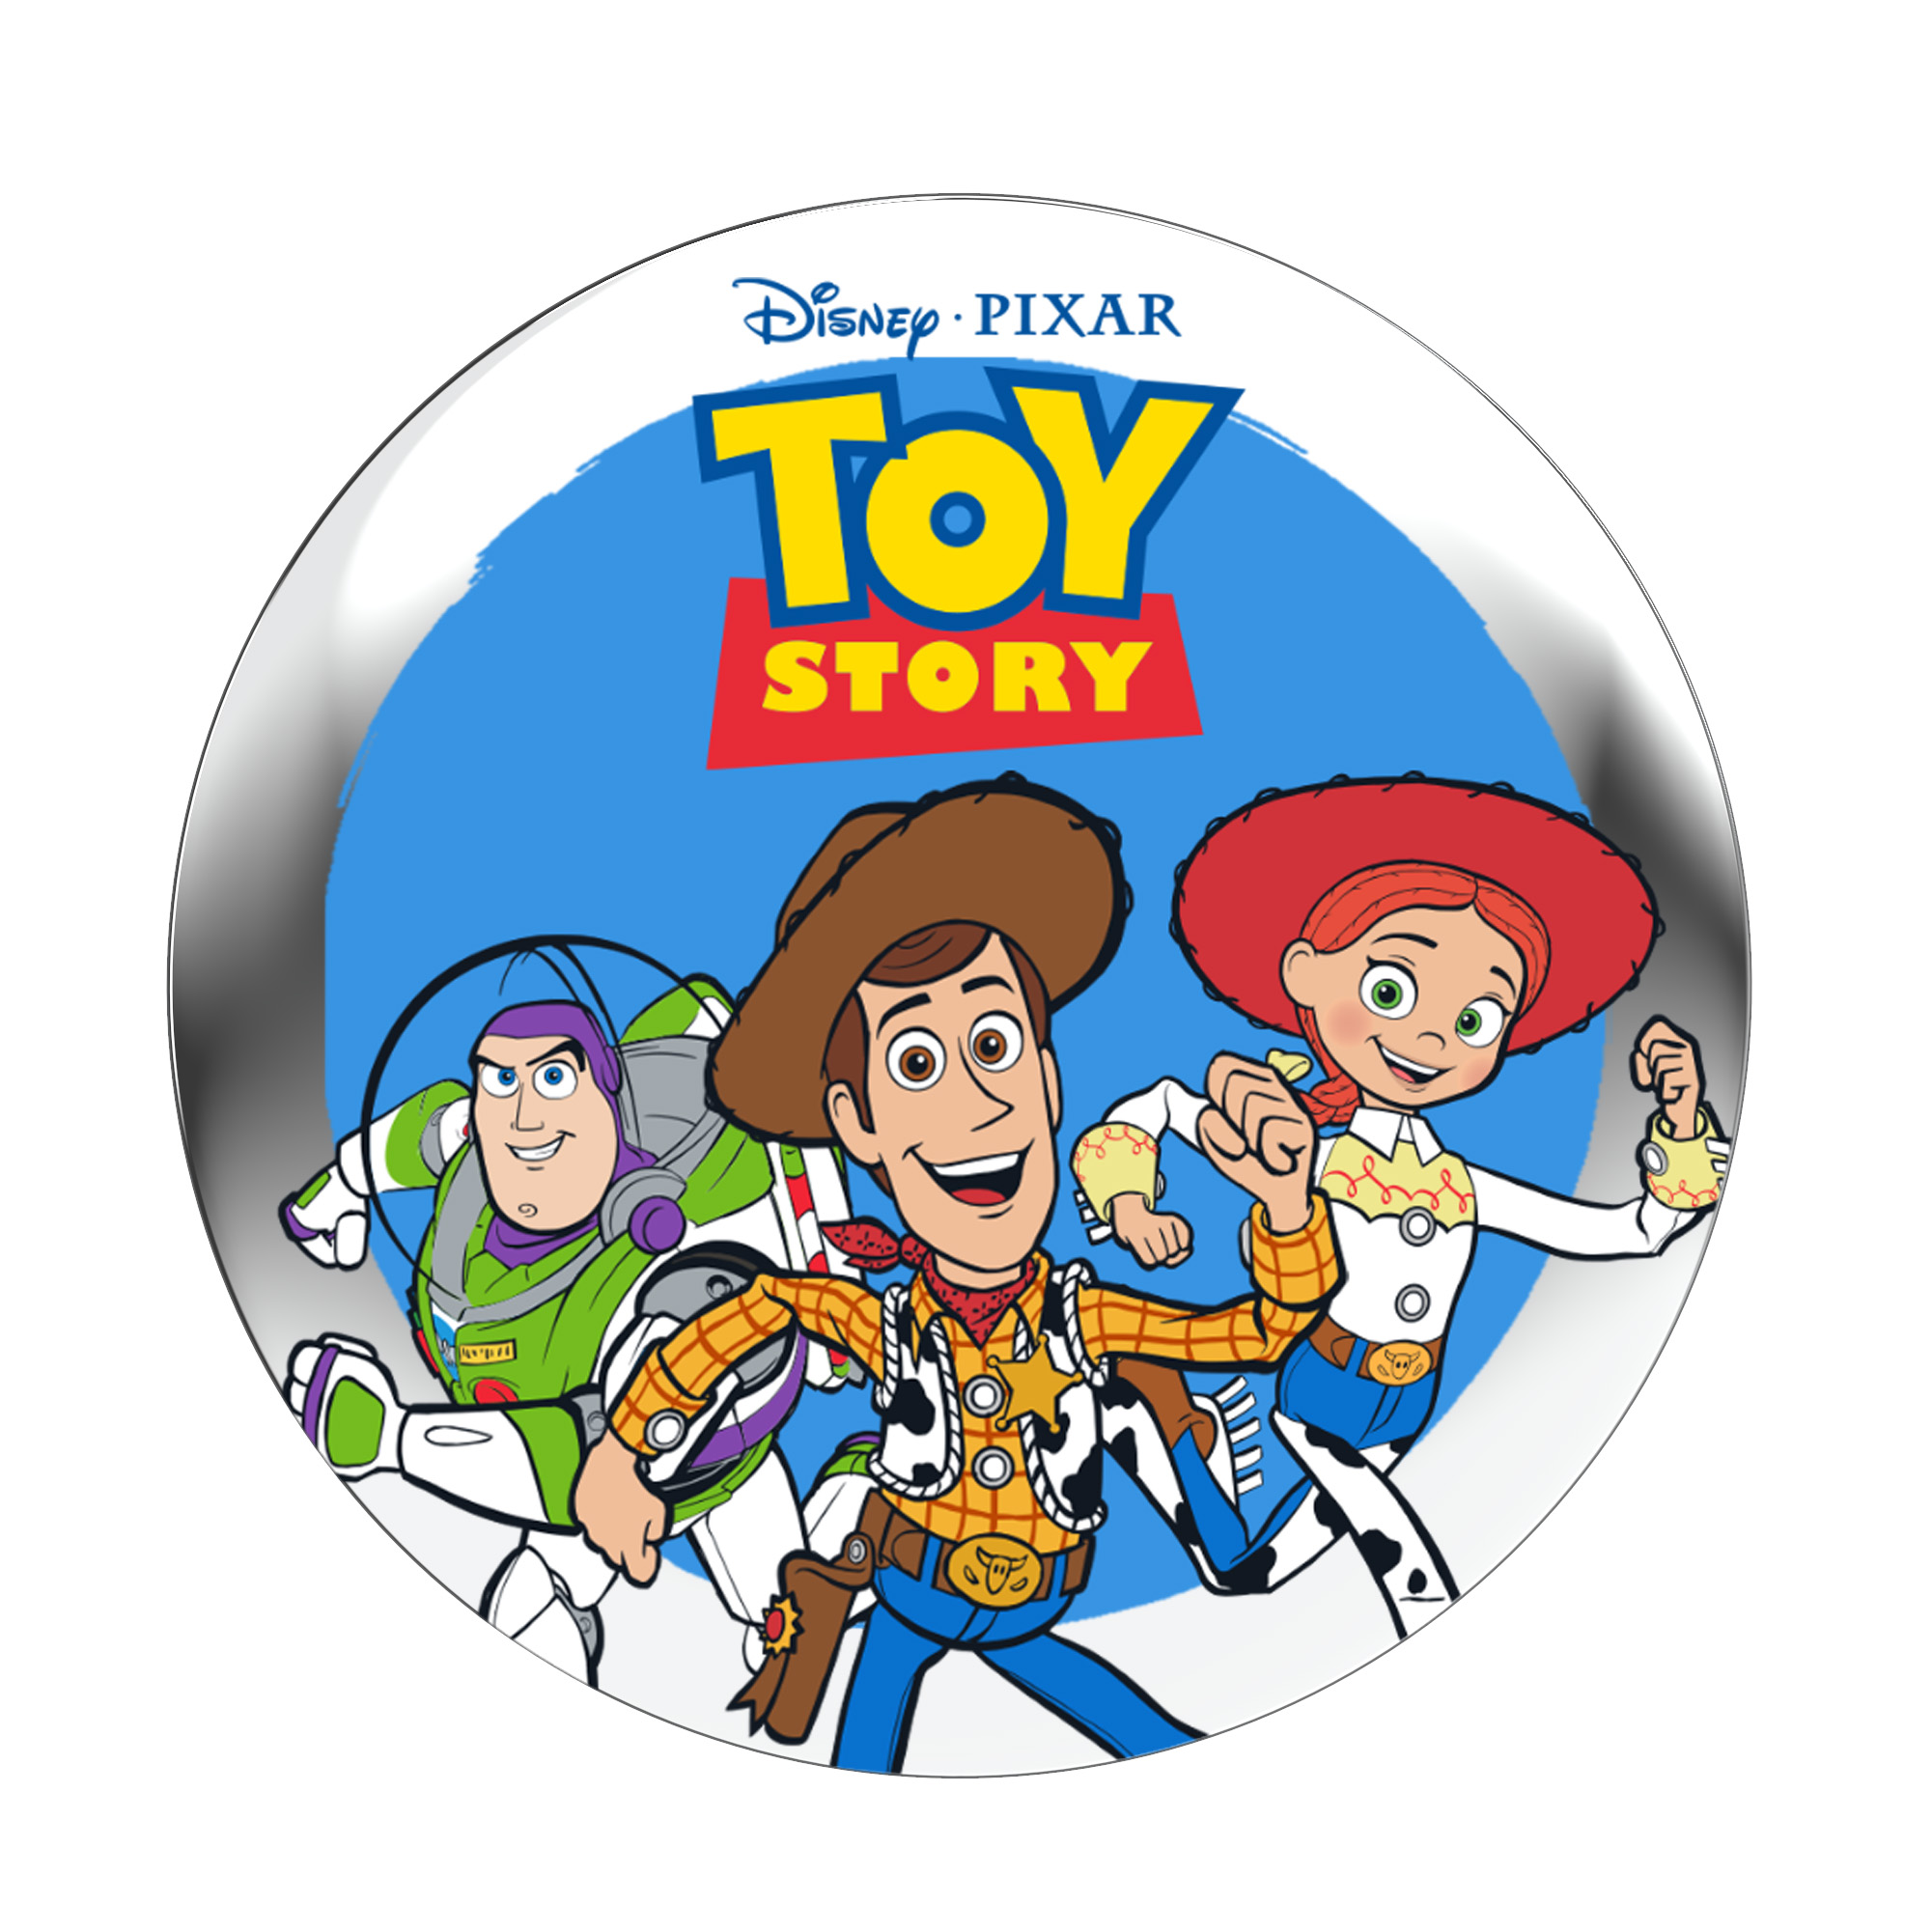  StoryShield - Disney - für Audiogeschichte (Download StoryPhones Story\' - \'Toy Audio Track)